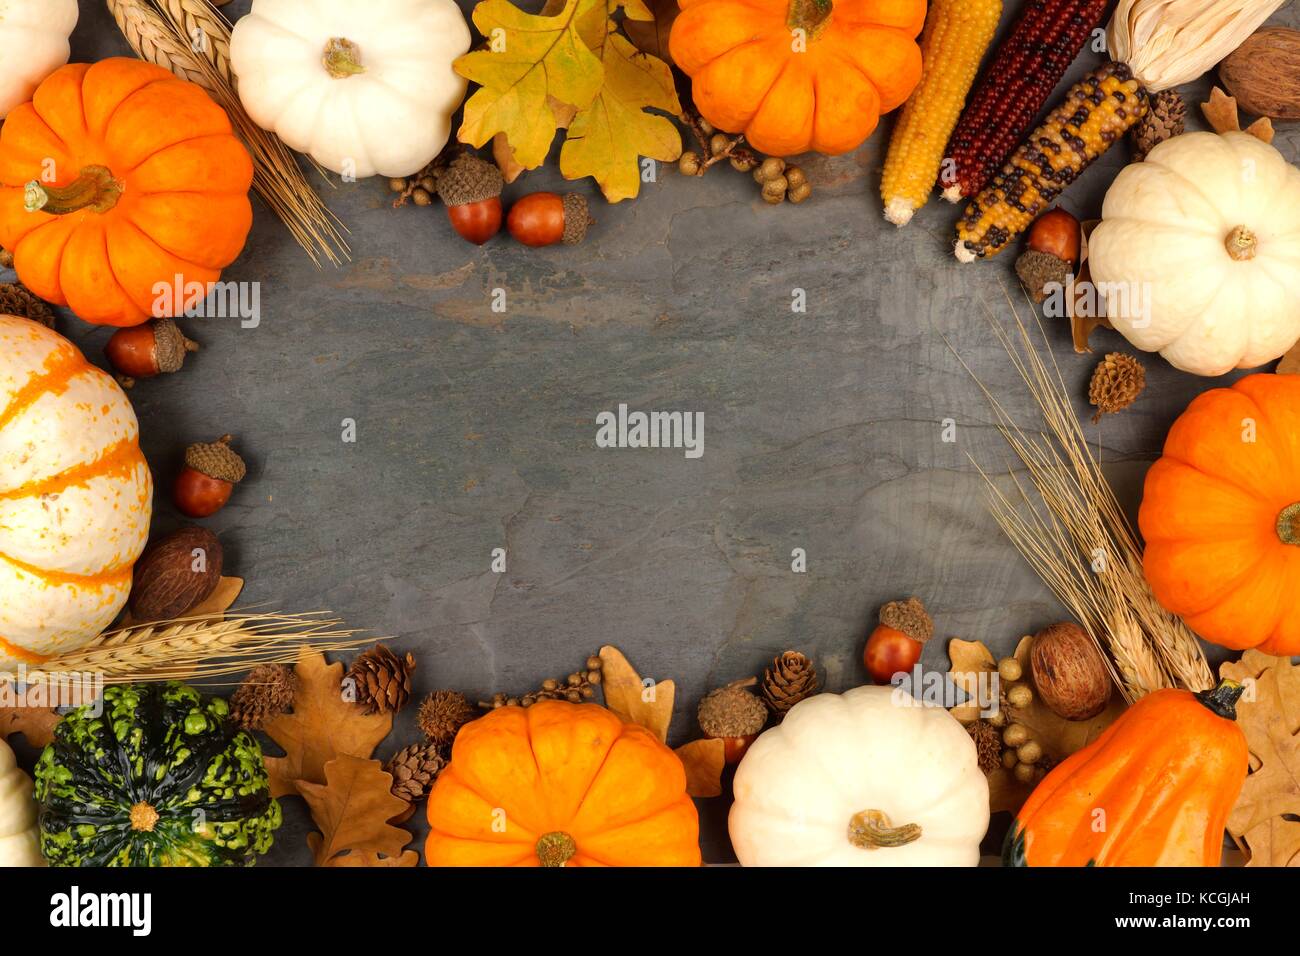 Chasse d'automne cadre avec les citrouilles, les feuilles et les noix sur une ardoise background Banque D'Images